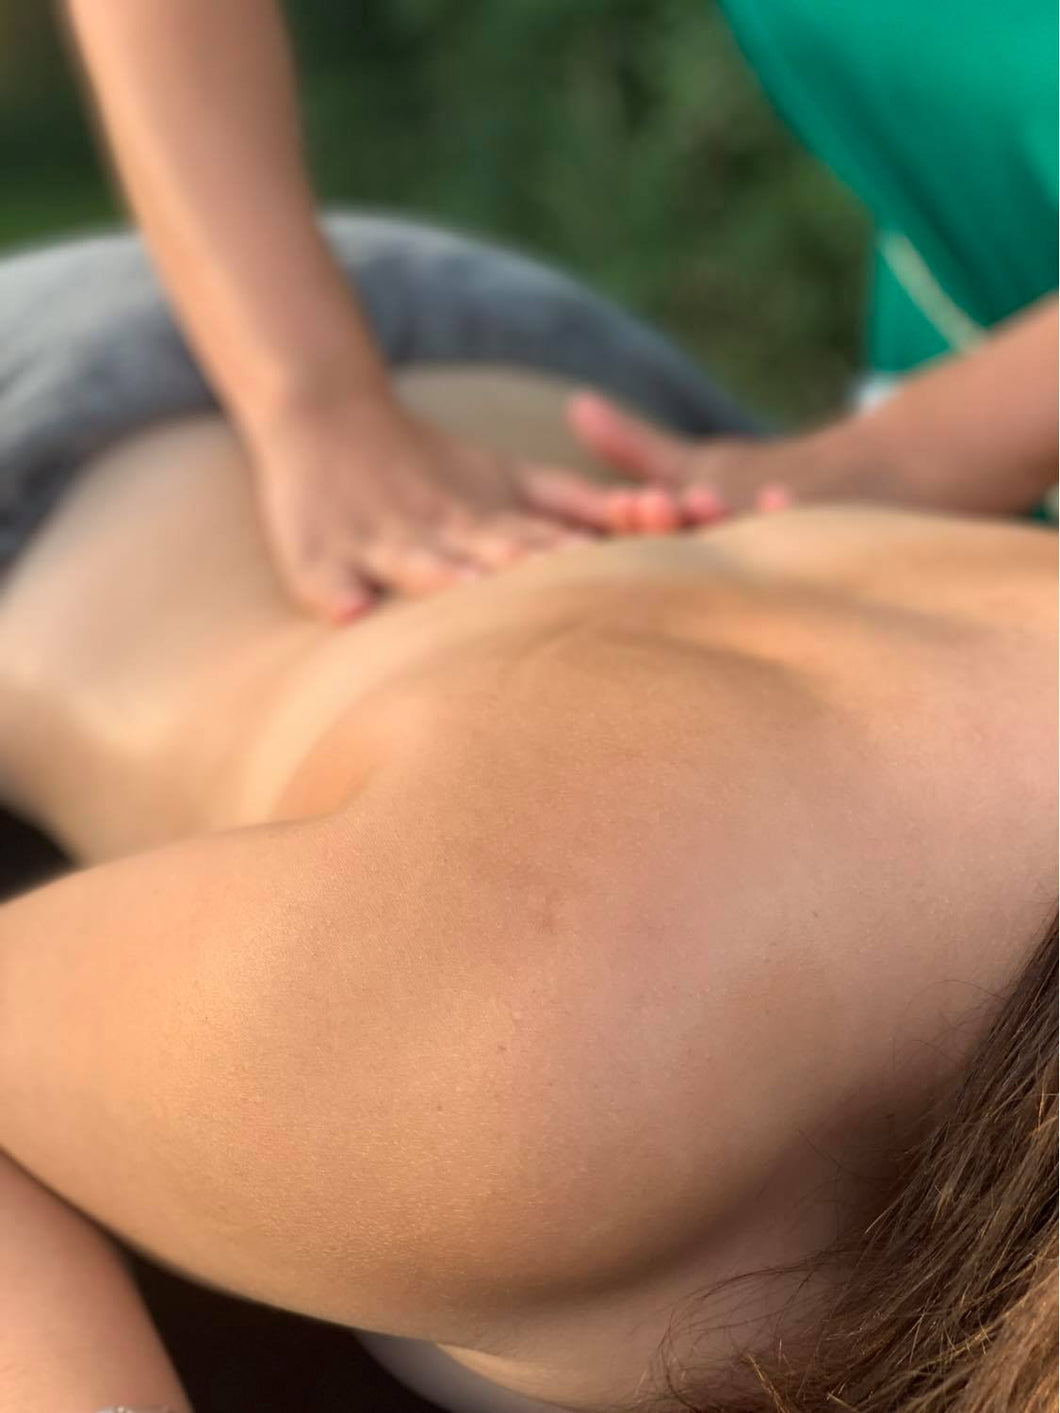 Massage Personnalisé